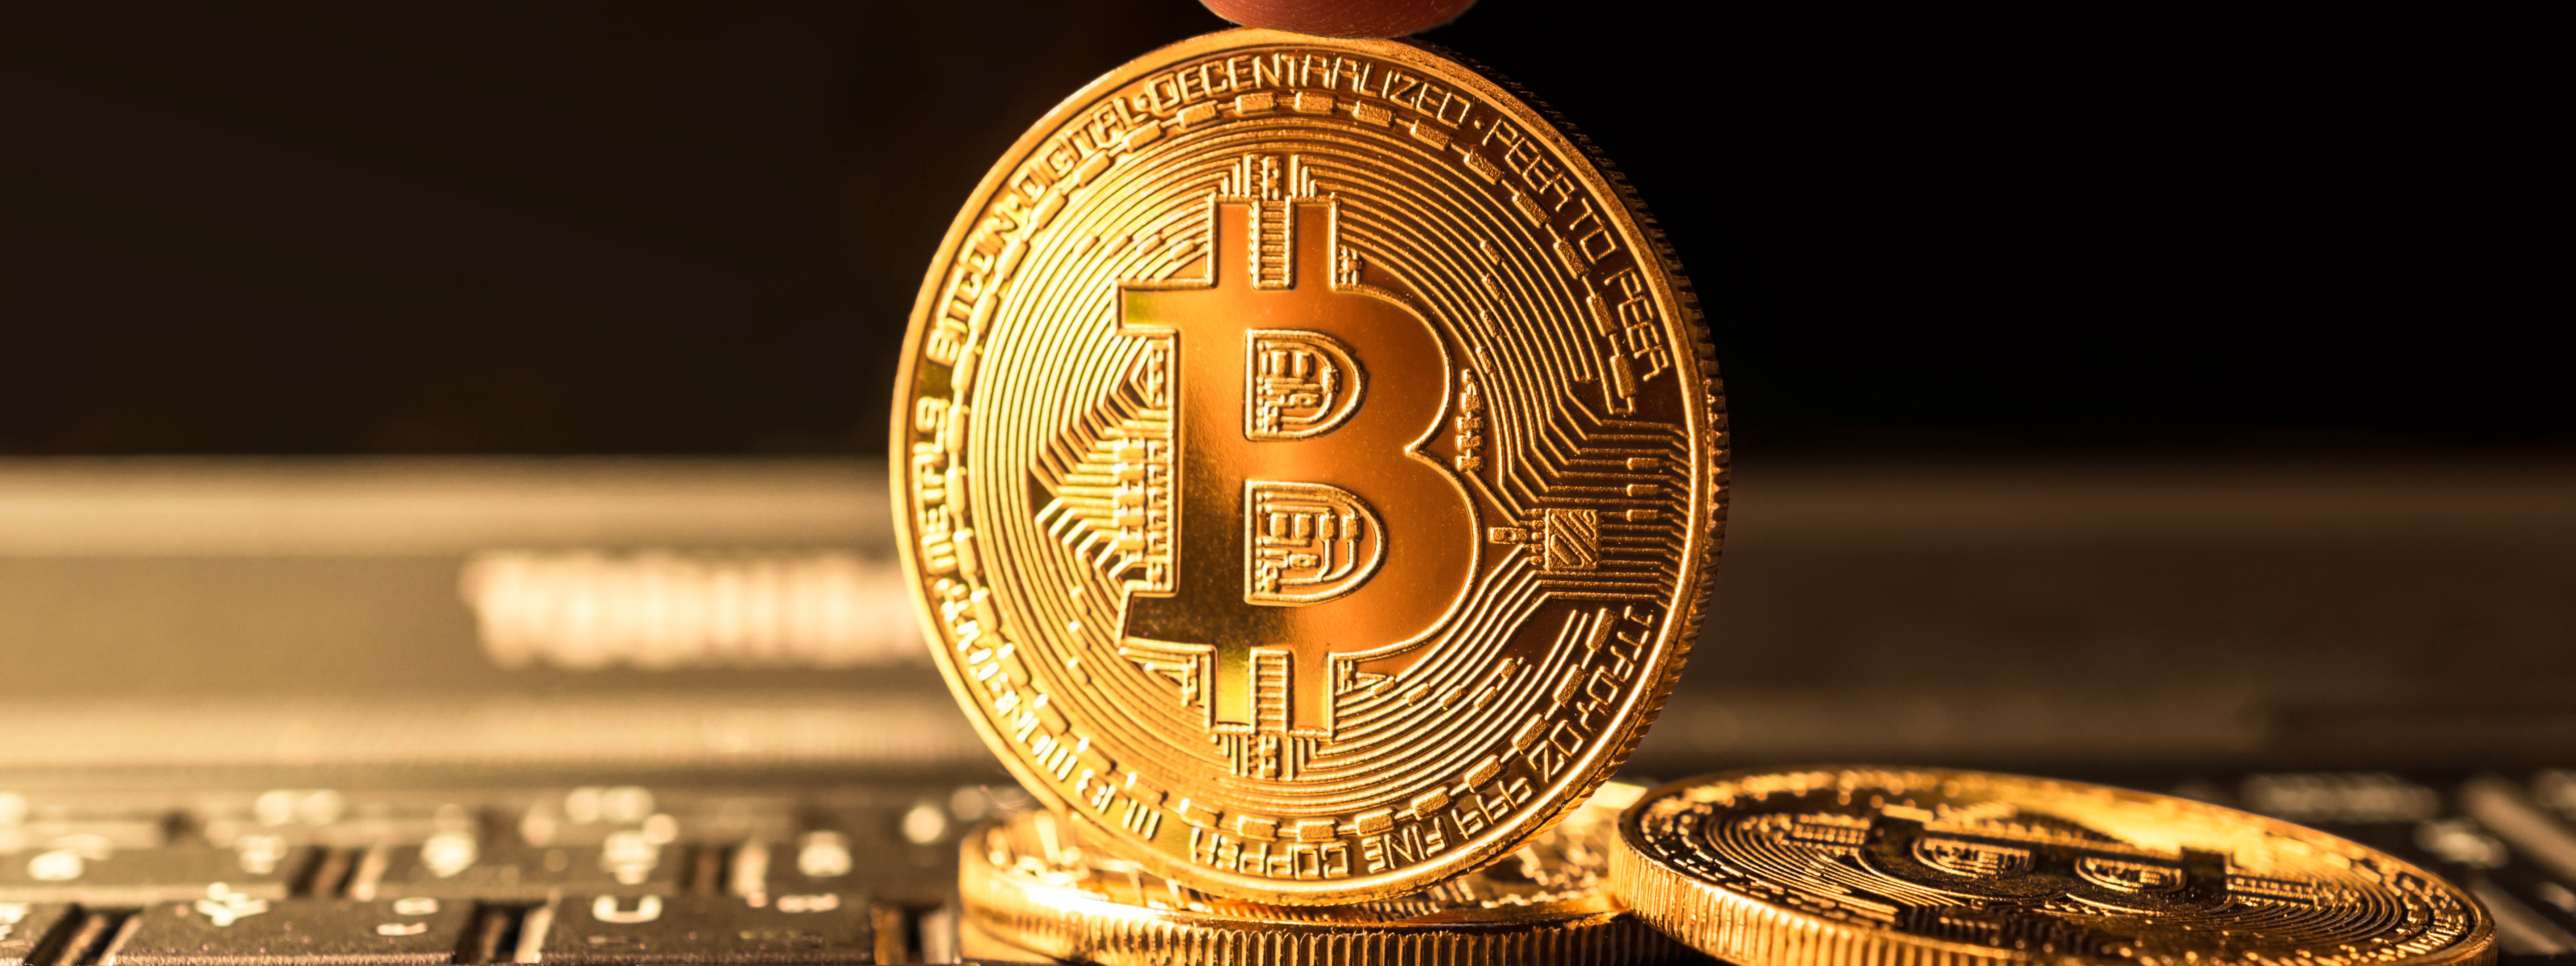 actuele waarde bitcoins news